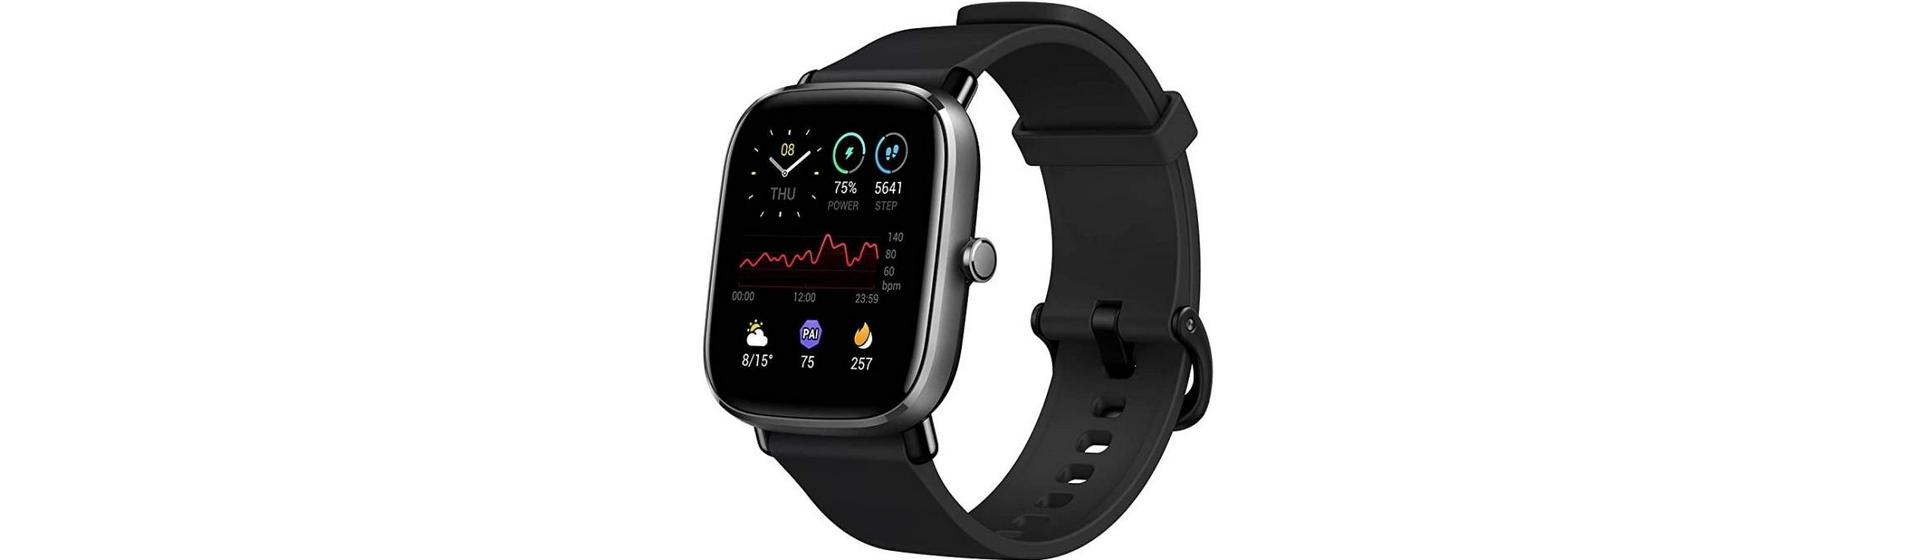 Promoção: Smartwatch Xiaomi Amazfit GTS 2 Mini na Amazon